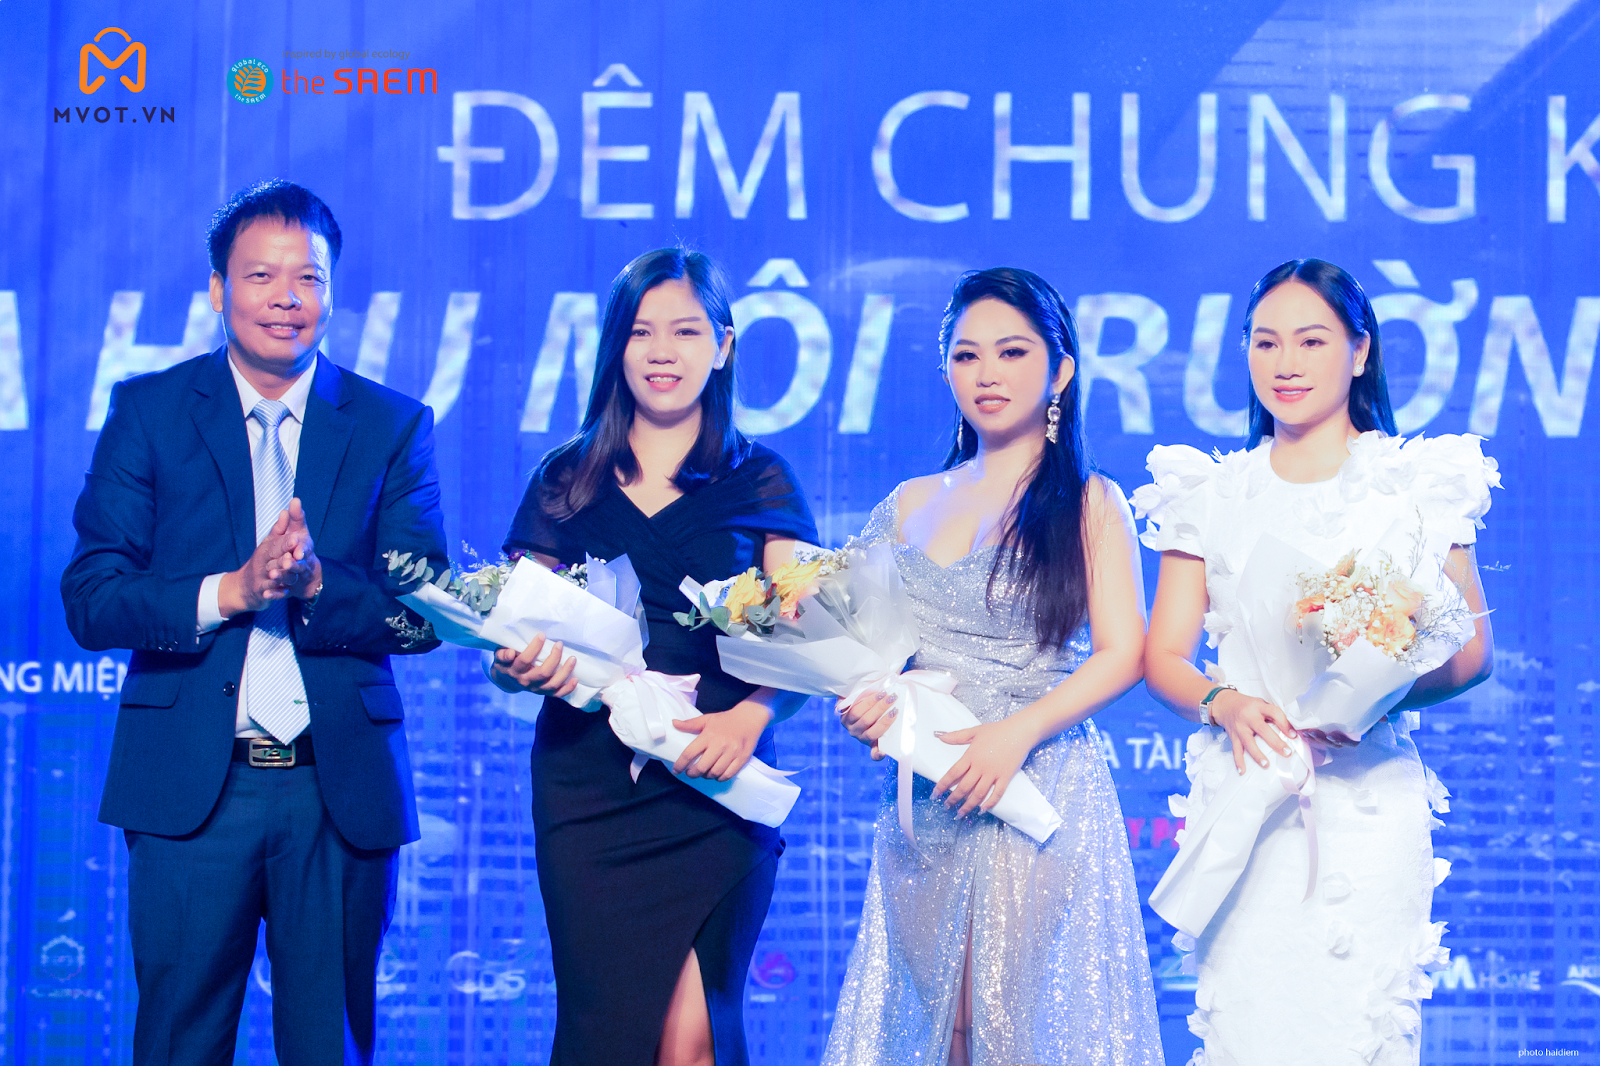 Gặp gỡ CEO Trần Thị Đan Thanh - Nữ doanh nhân lập nghiệp từ hai bàn tay trắng Ảnh 3